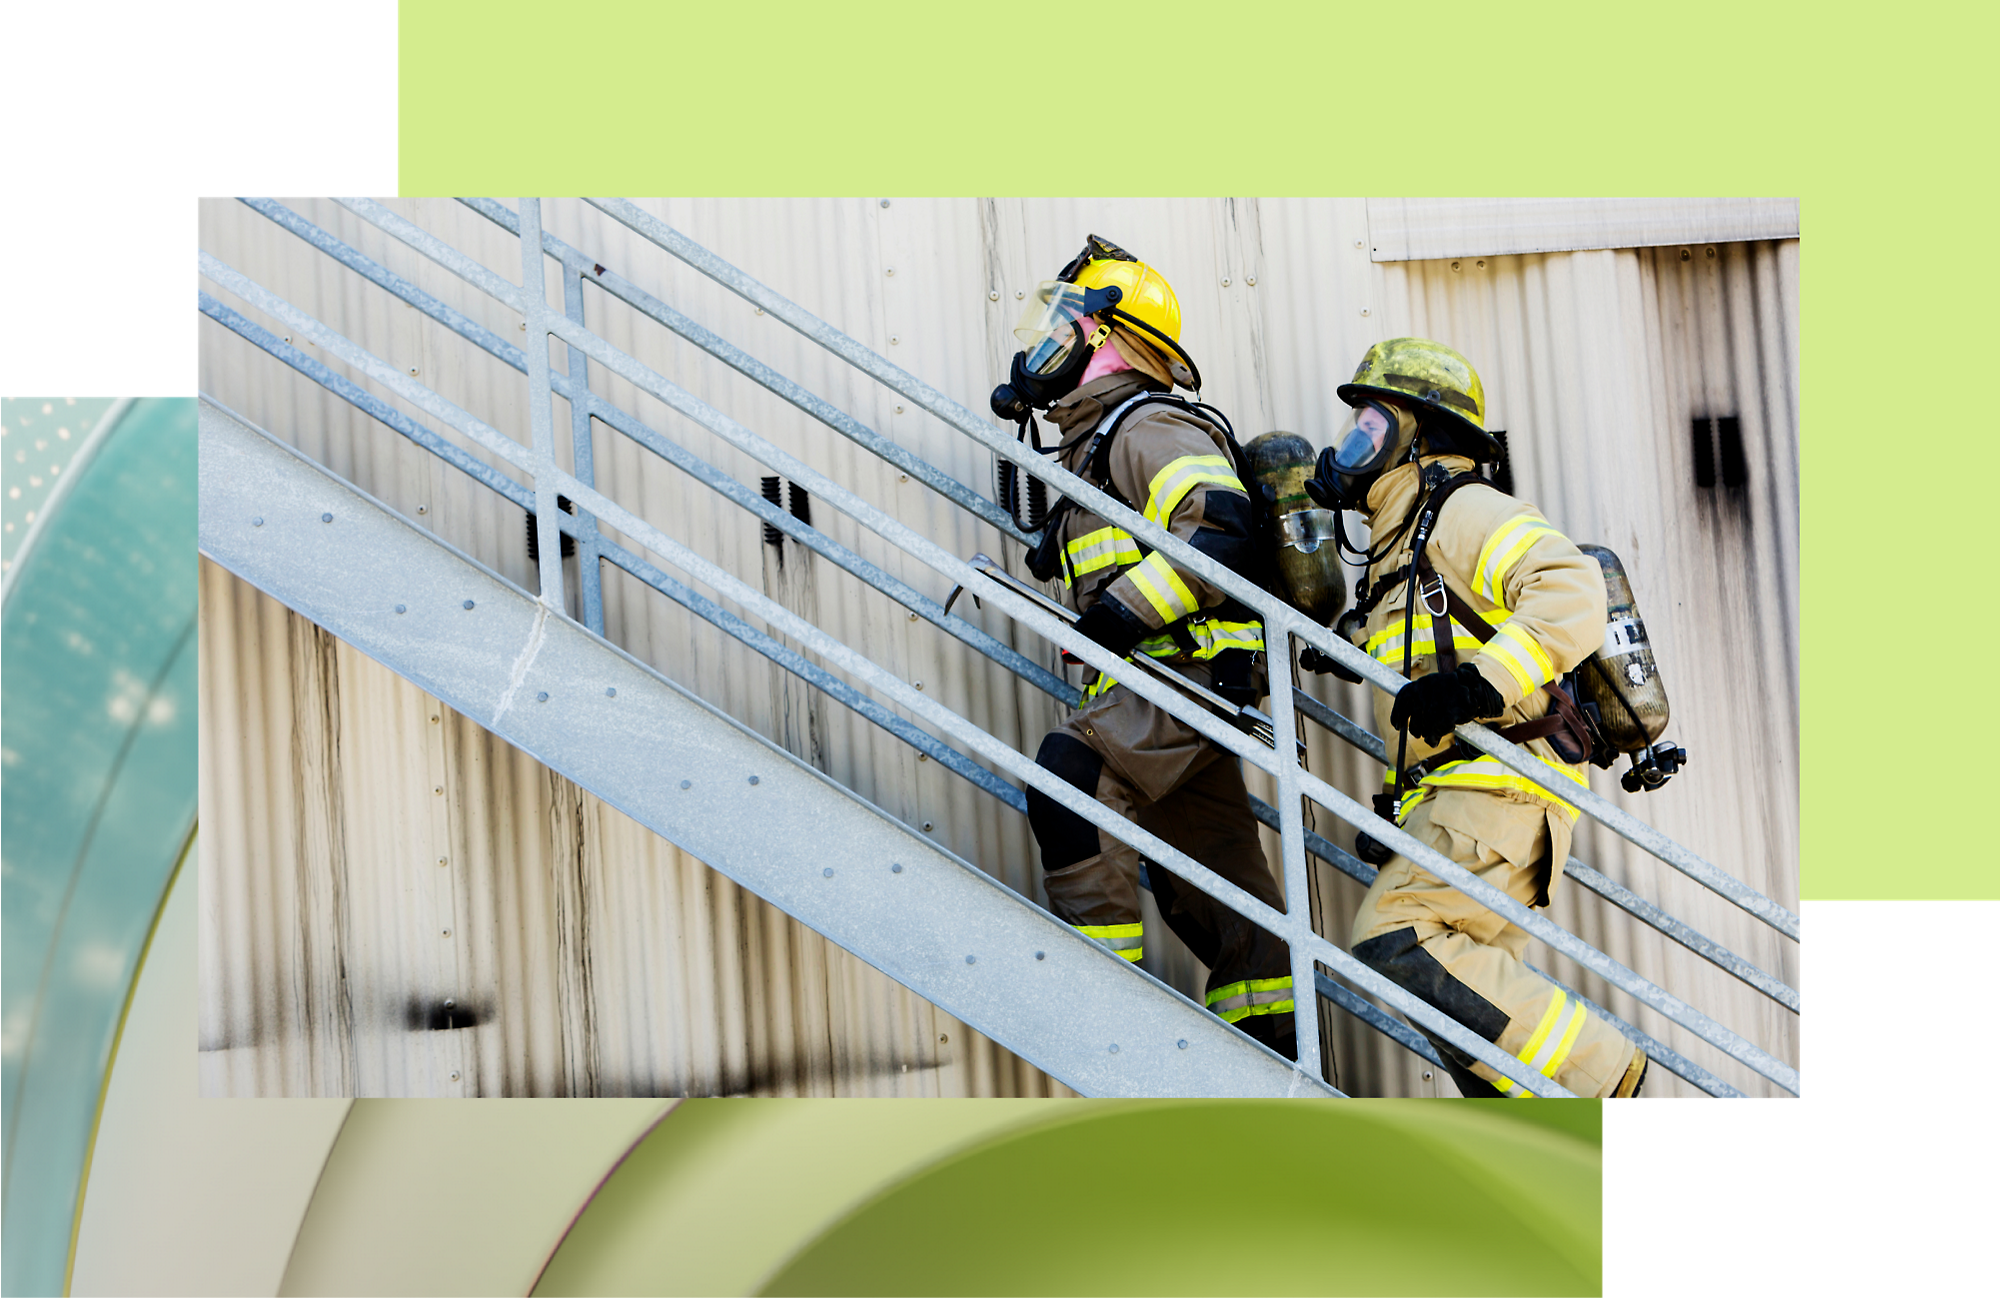 Két tűzoltó teljes felszerelésben egy kültéri fémlépcsőn felfelé halad egy vészhelyzeti reagálási gyakorlat során.